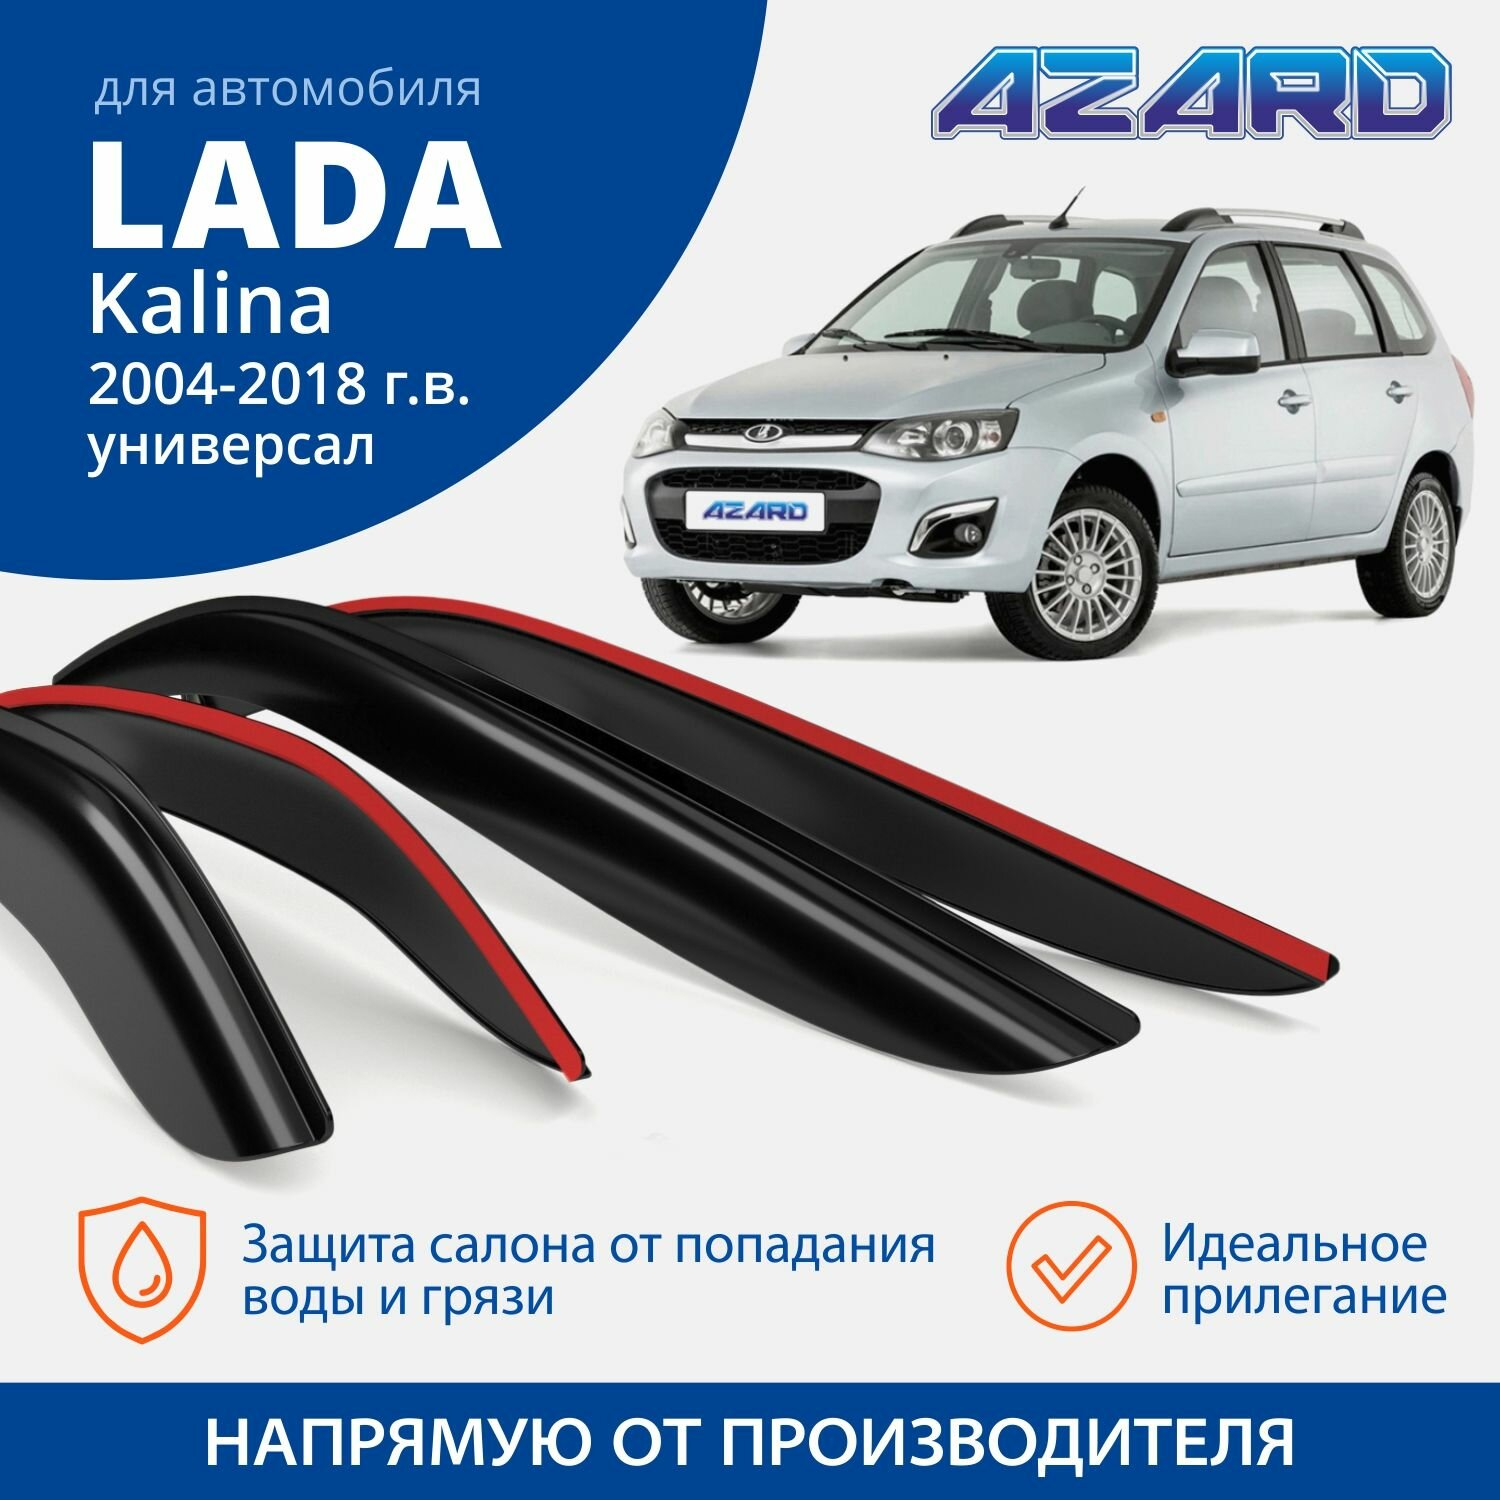 Дефлекторы окон Azard для Lada Kalina I - II 2004-2018 универсал накладные к-т 4шт